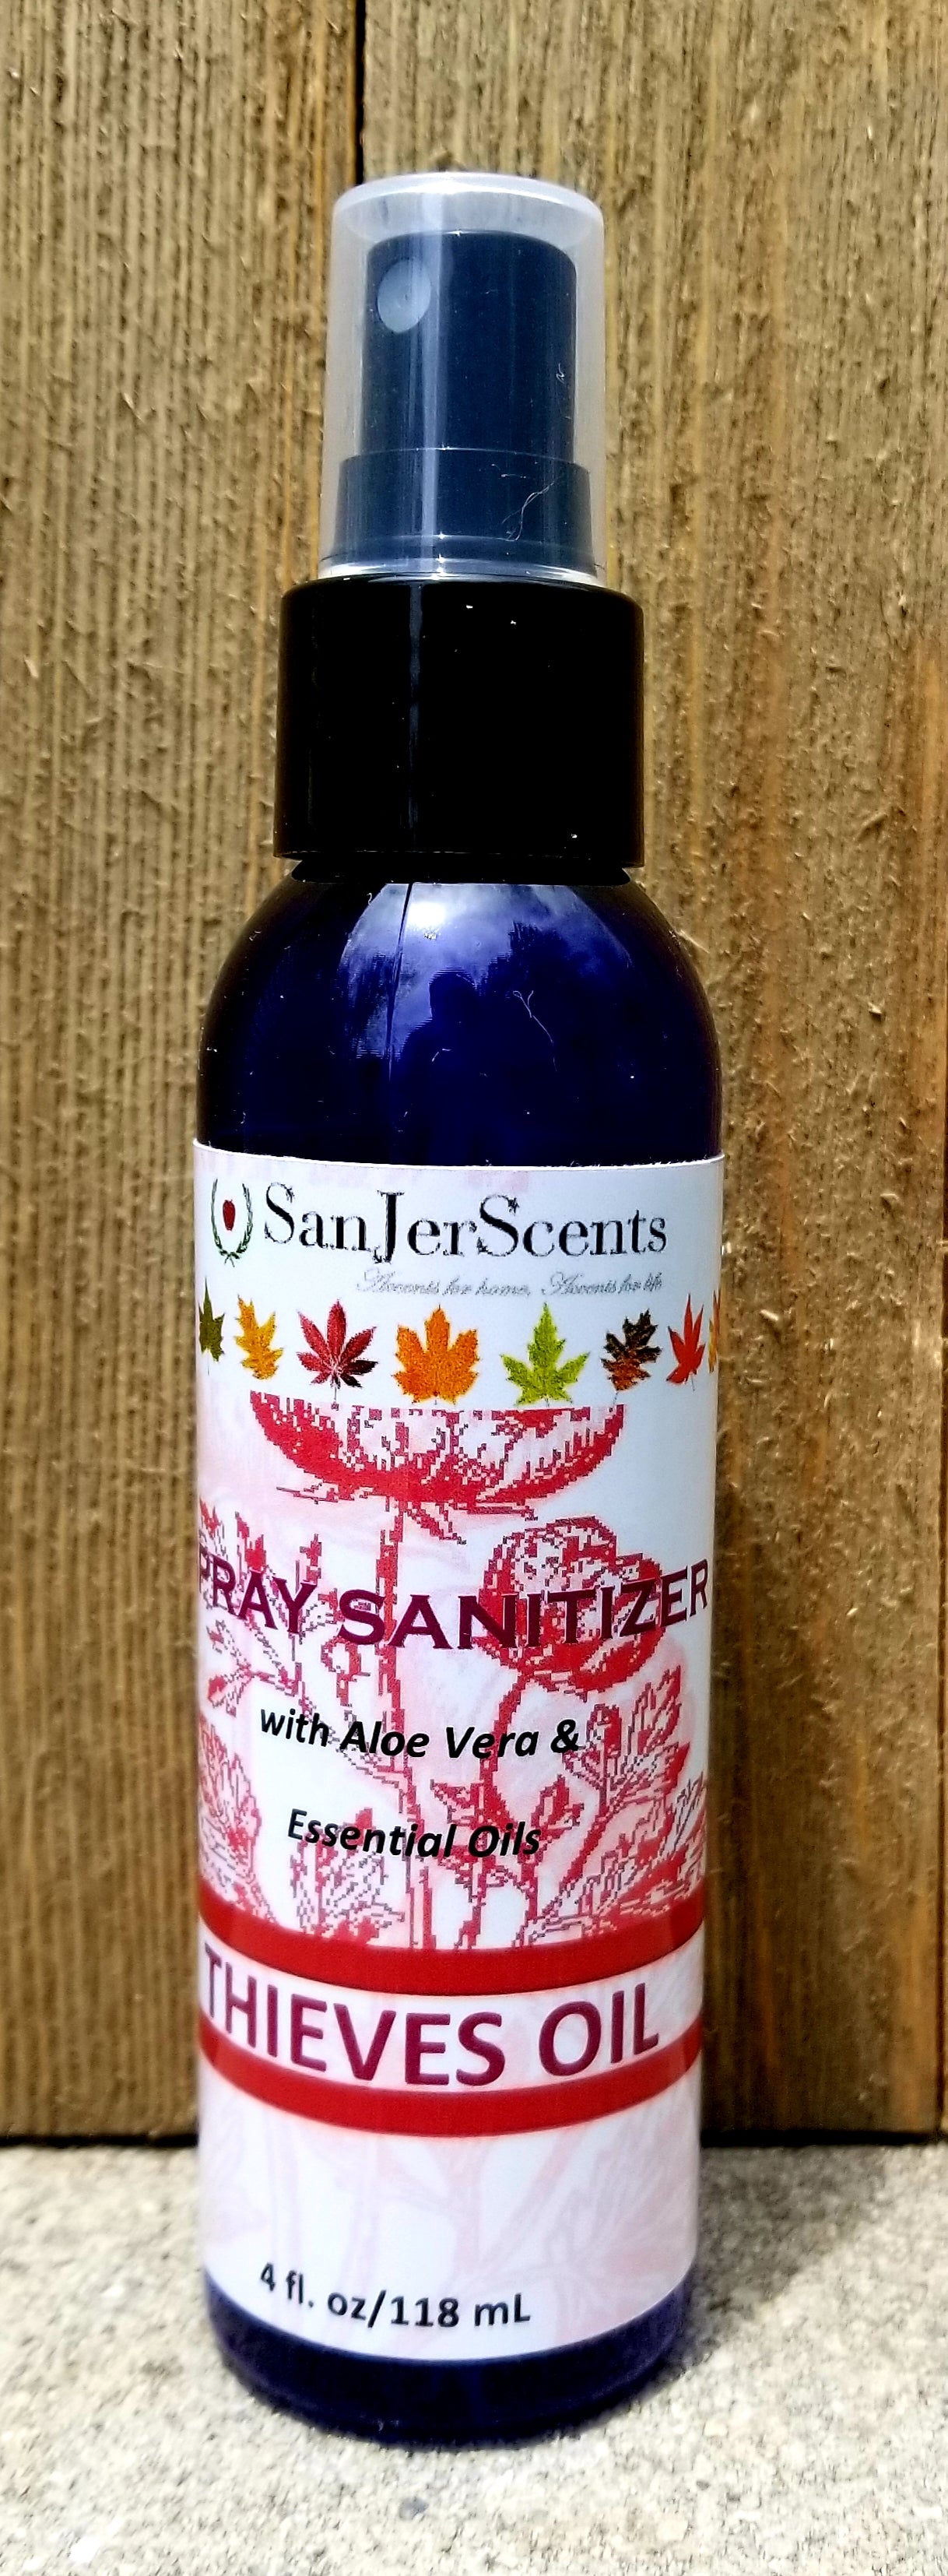 4 oz sanitizer spray bottle in Thieves Oil scent